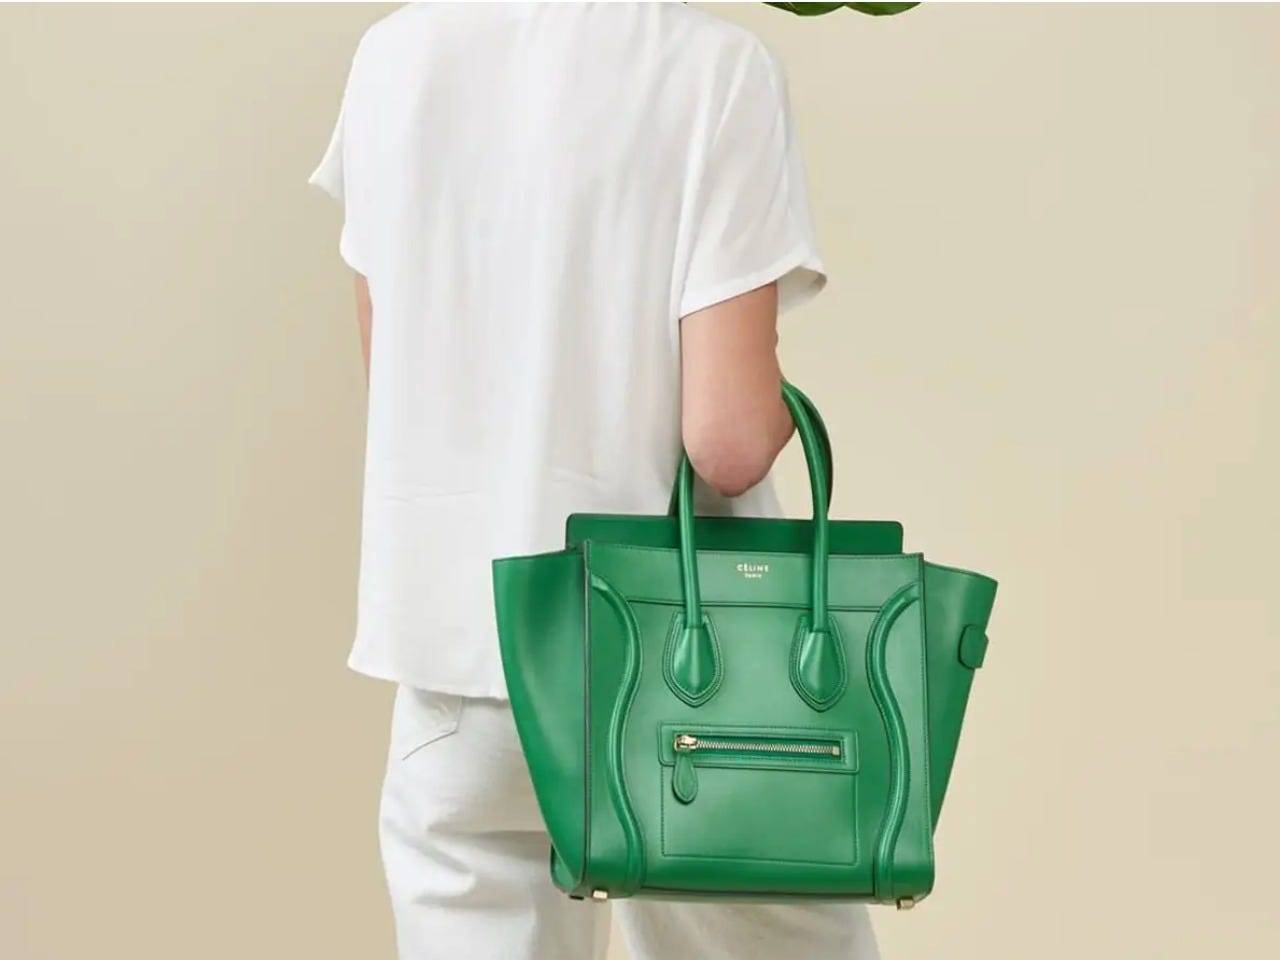 Make money flipping designer handbags